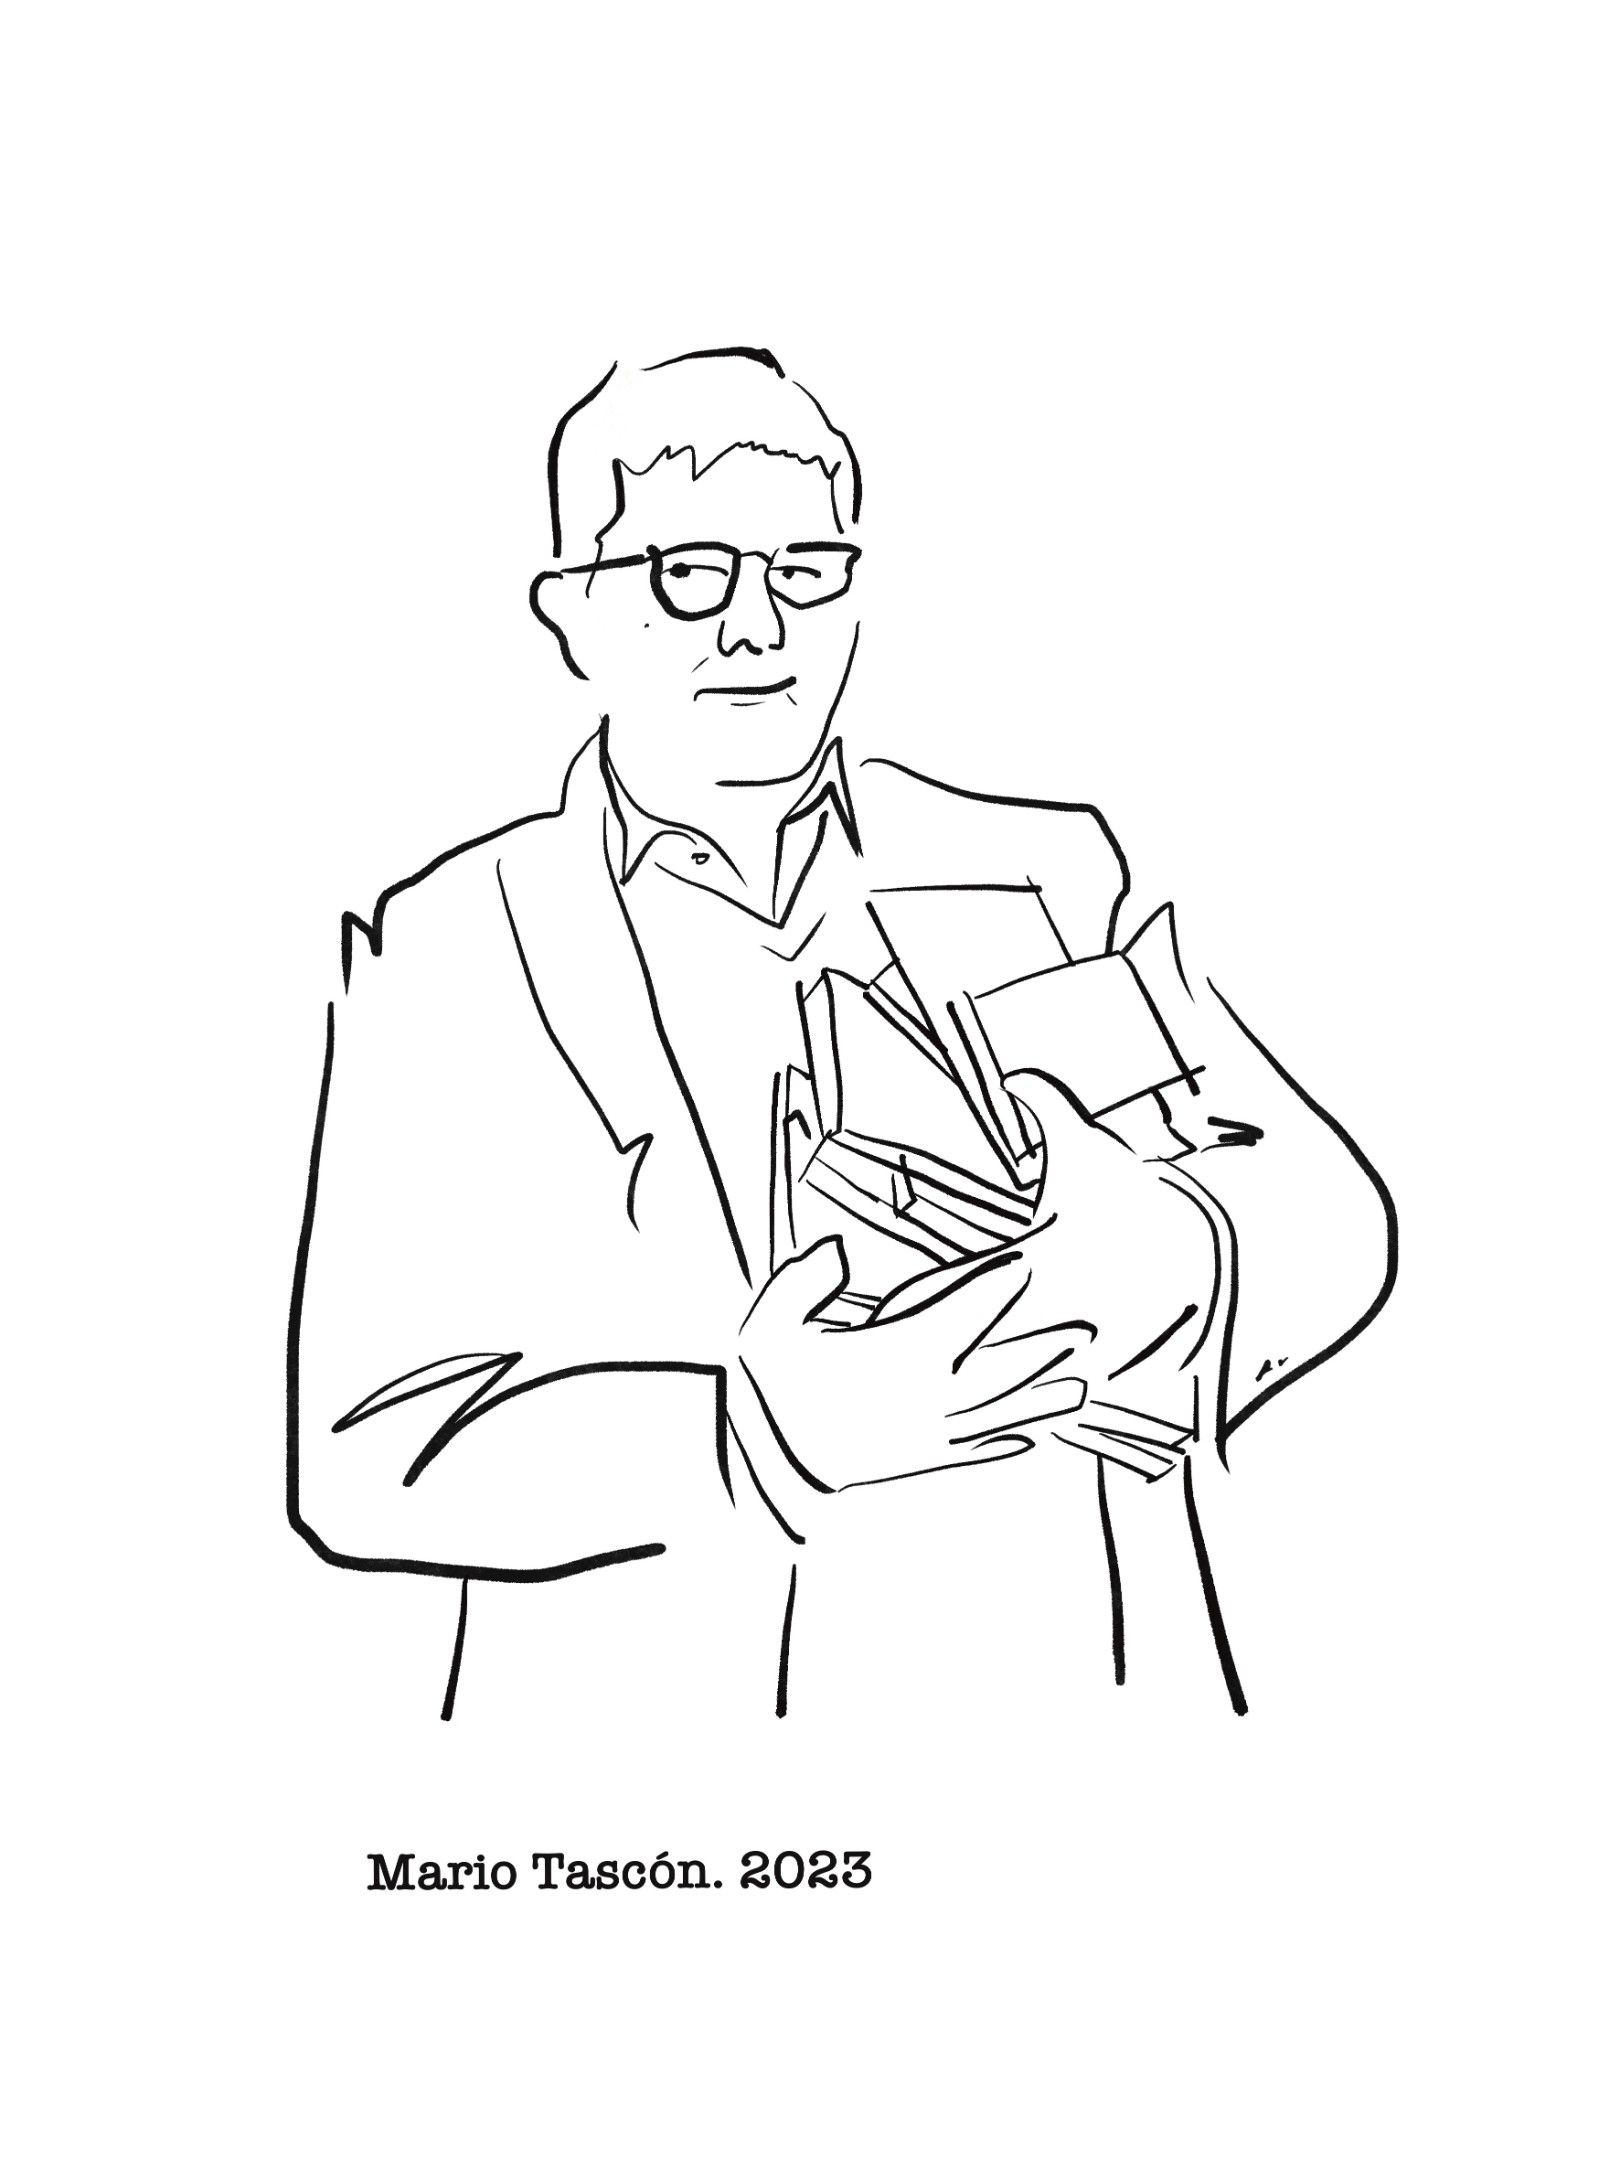 Ilustración de Mario Tascón por Javier Carlos.